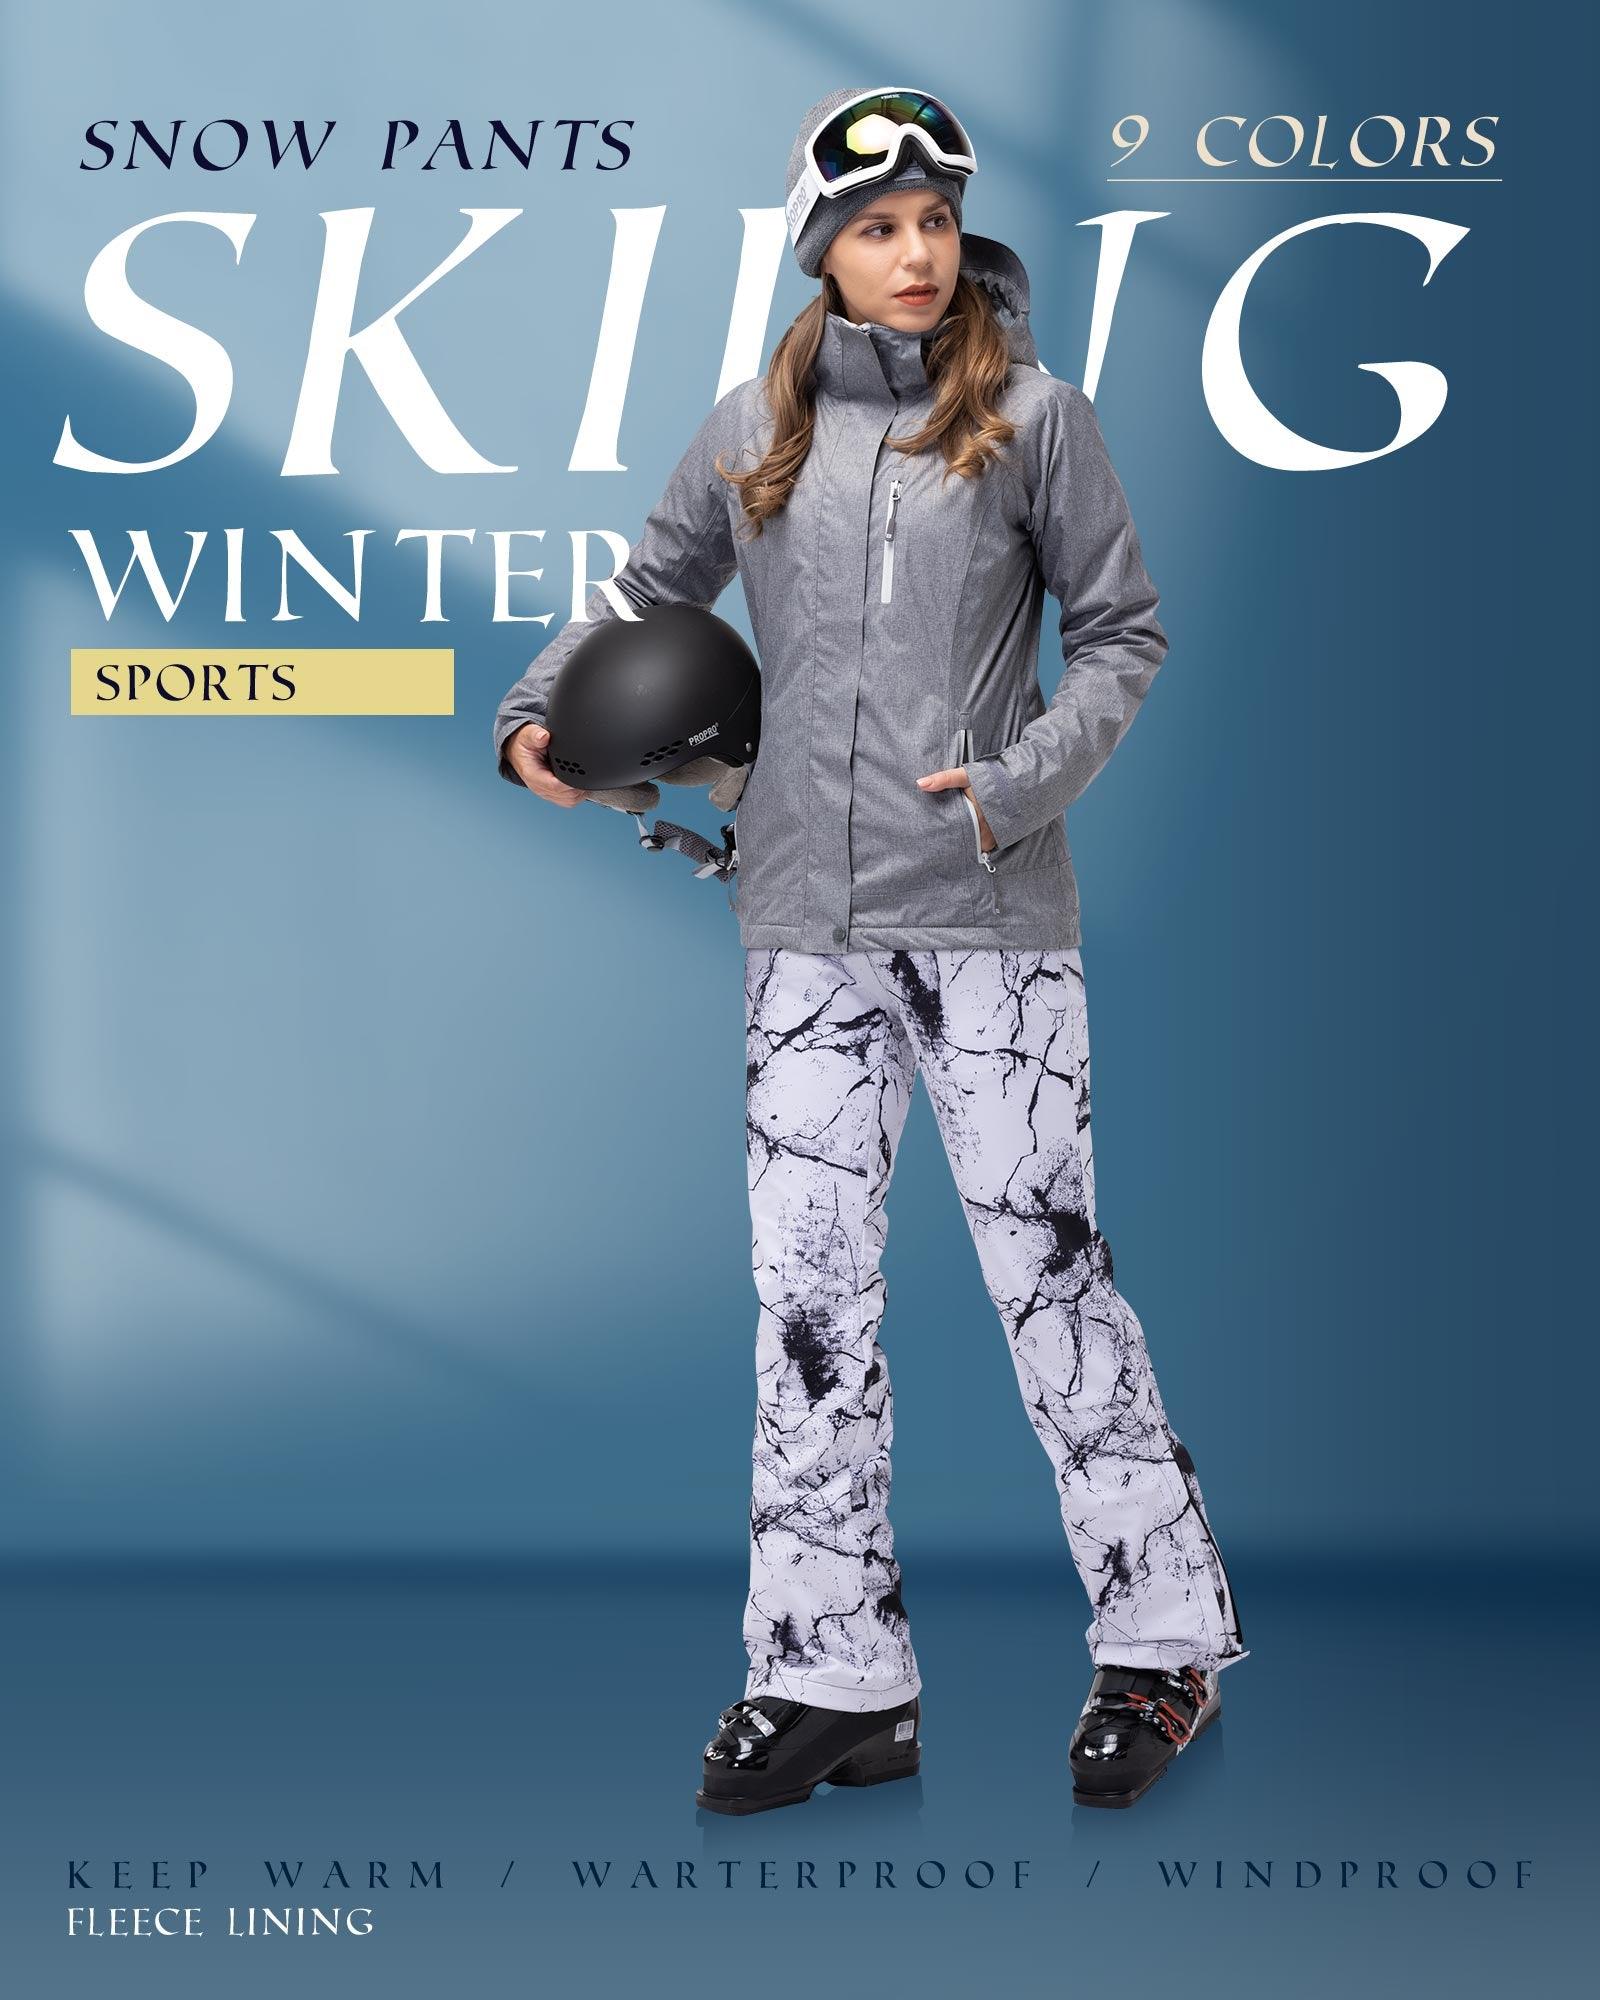 Women's Outdoor Fleece Lined Ski Pants with Boot Gaiters: 8000mm W